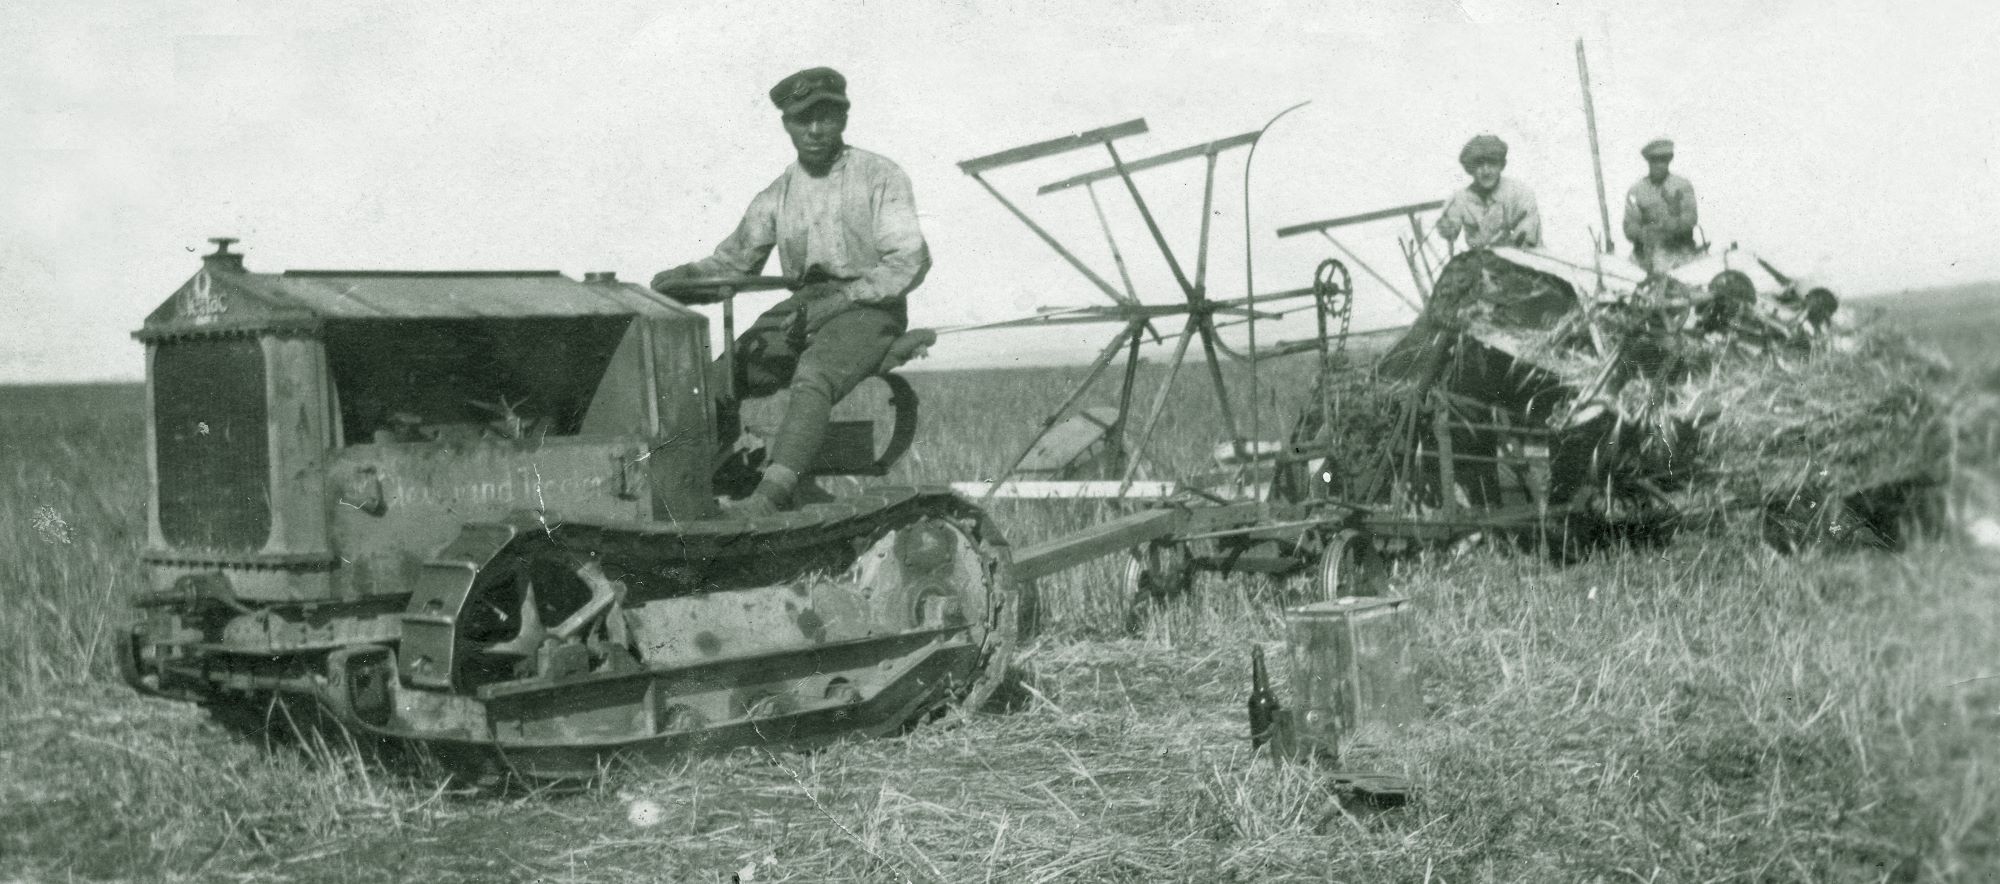 טרקטור זחלי מושך מקצרה־מערמת כנראה ממודל שעבד בשדות מרחביה, שנות ה-20